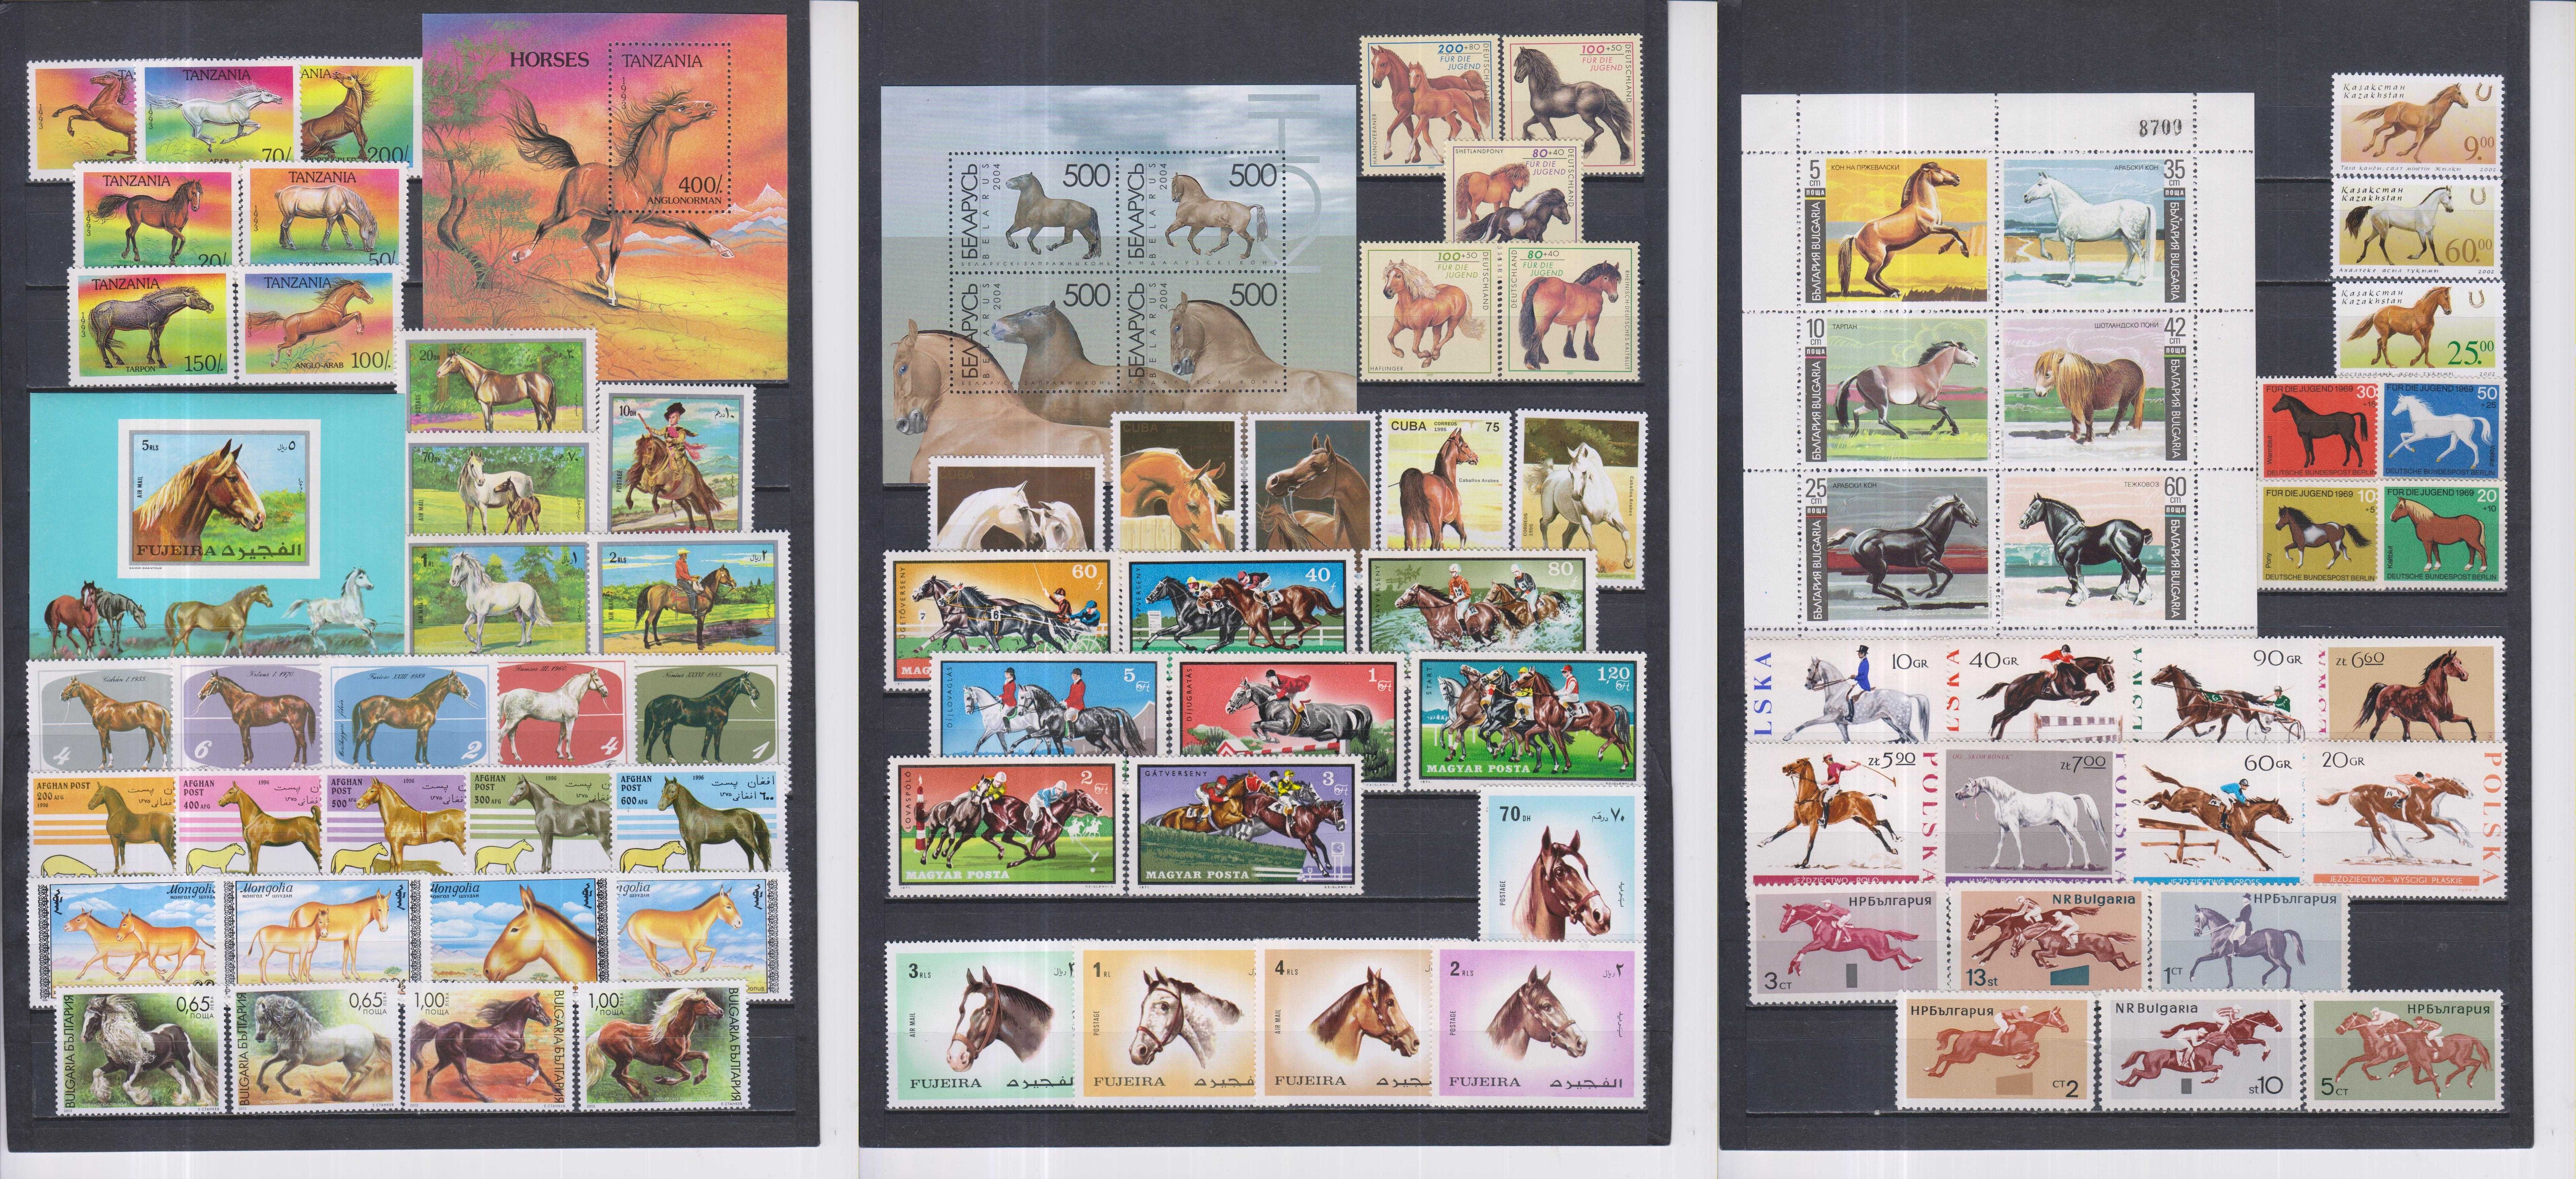 Lot de timbre cu animale domestice